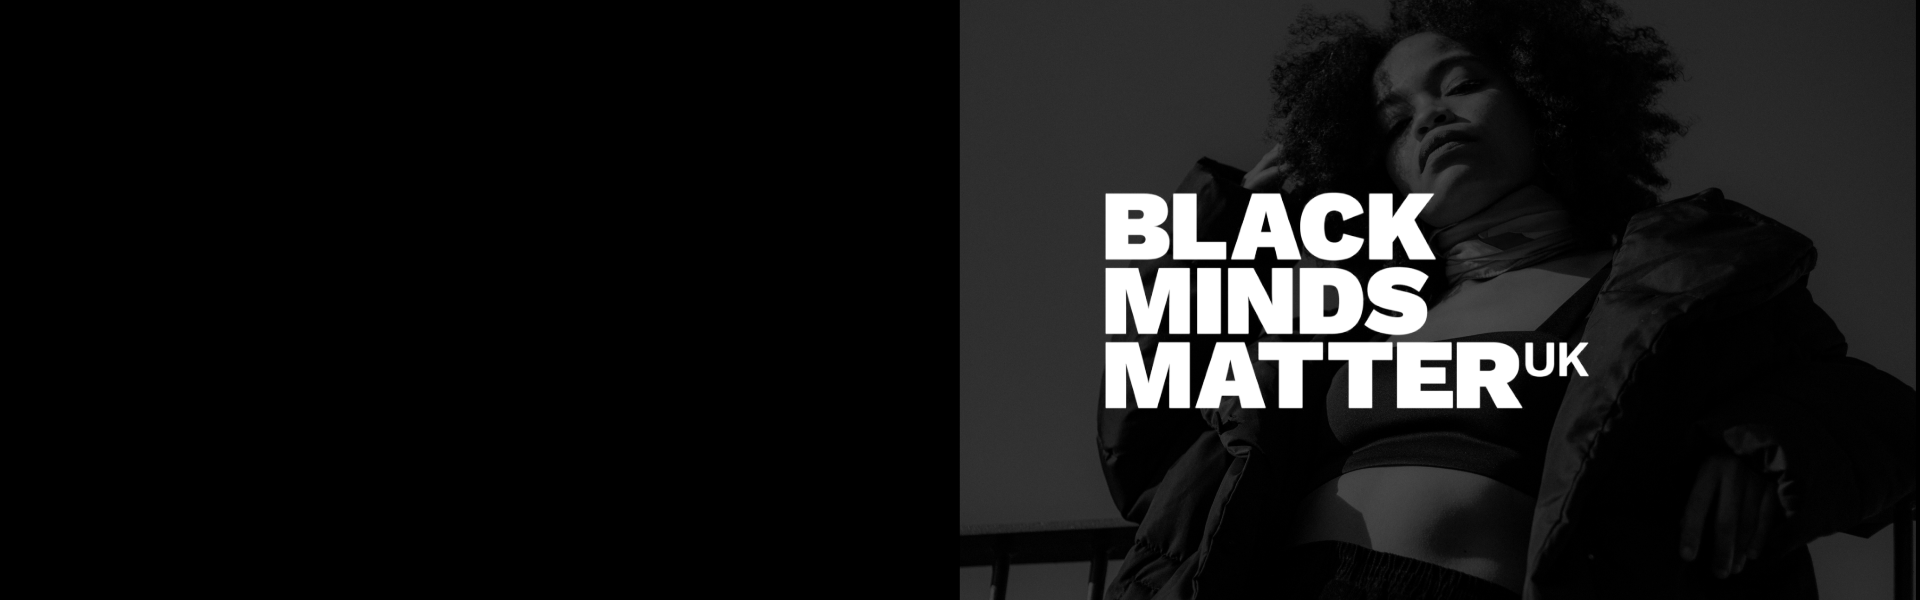 Pai x 
BLACK MINDS
MATTER UK